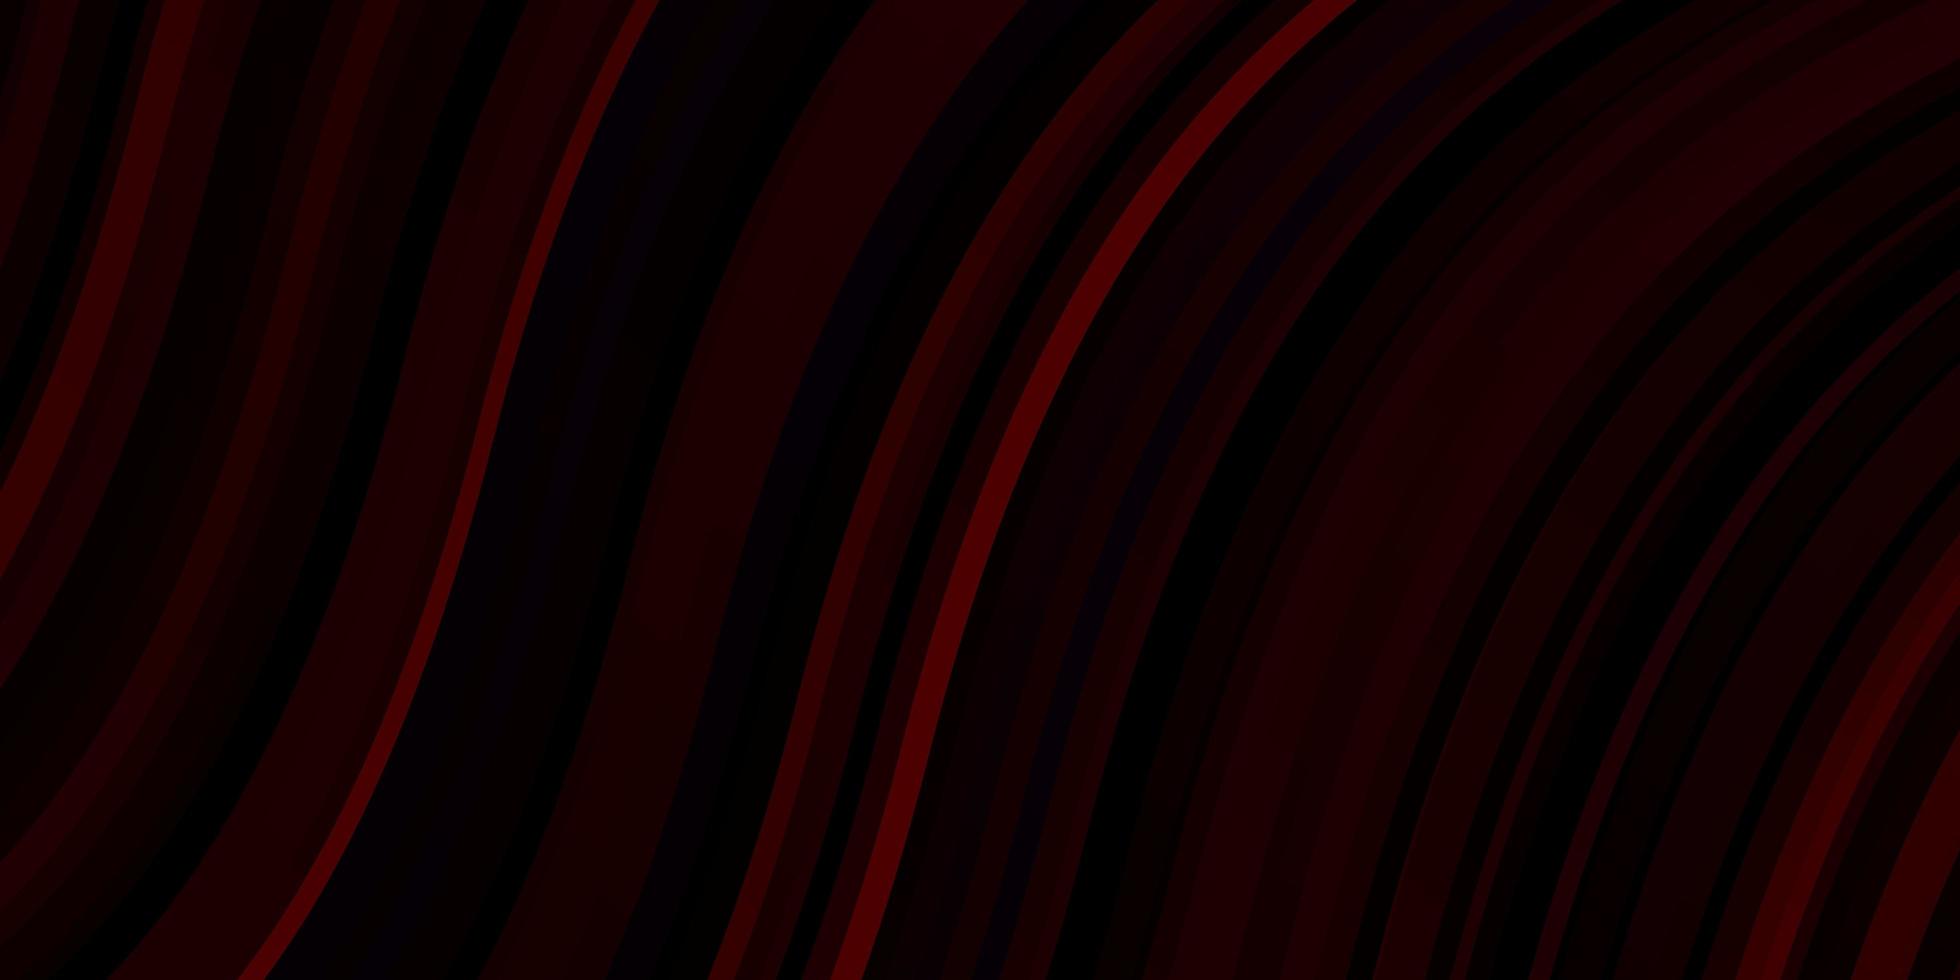 Fondo de vector rojo oscuro con líneas dobladas. Ilustración abstracta con arcos degradados. mejor diseño para su anuncio, cartel, banner.